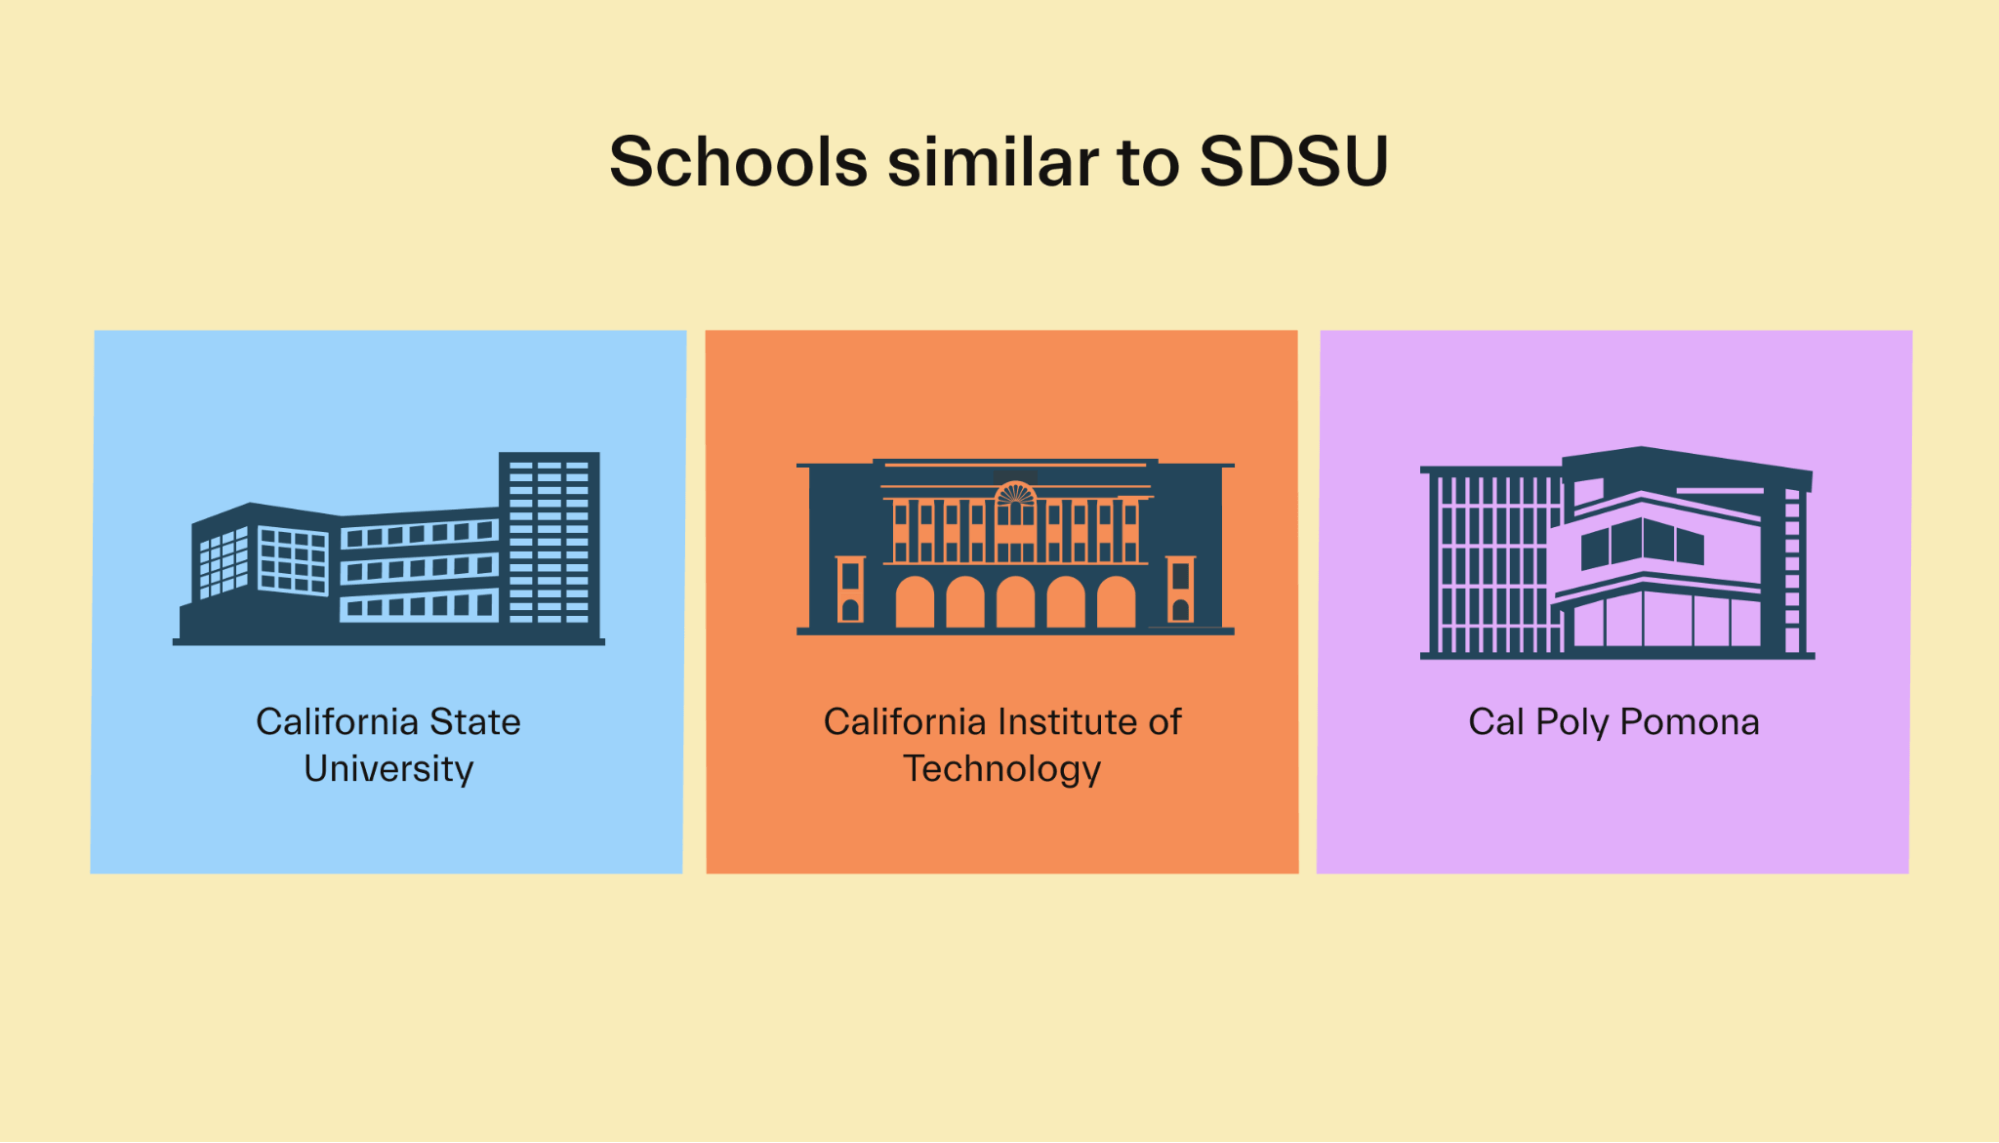 Schools like SDSU